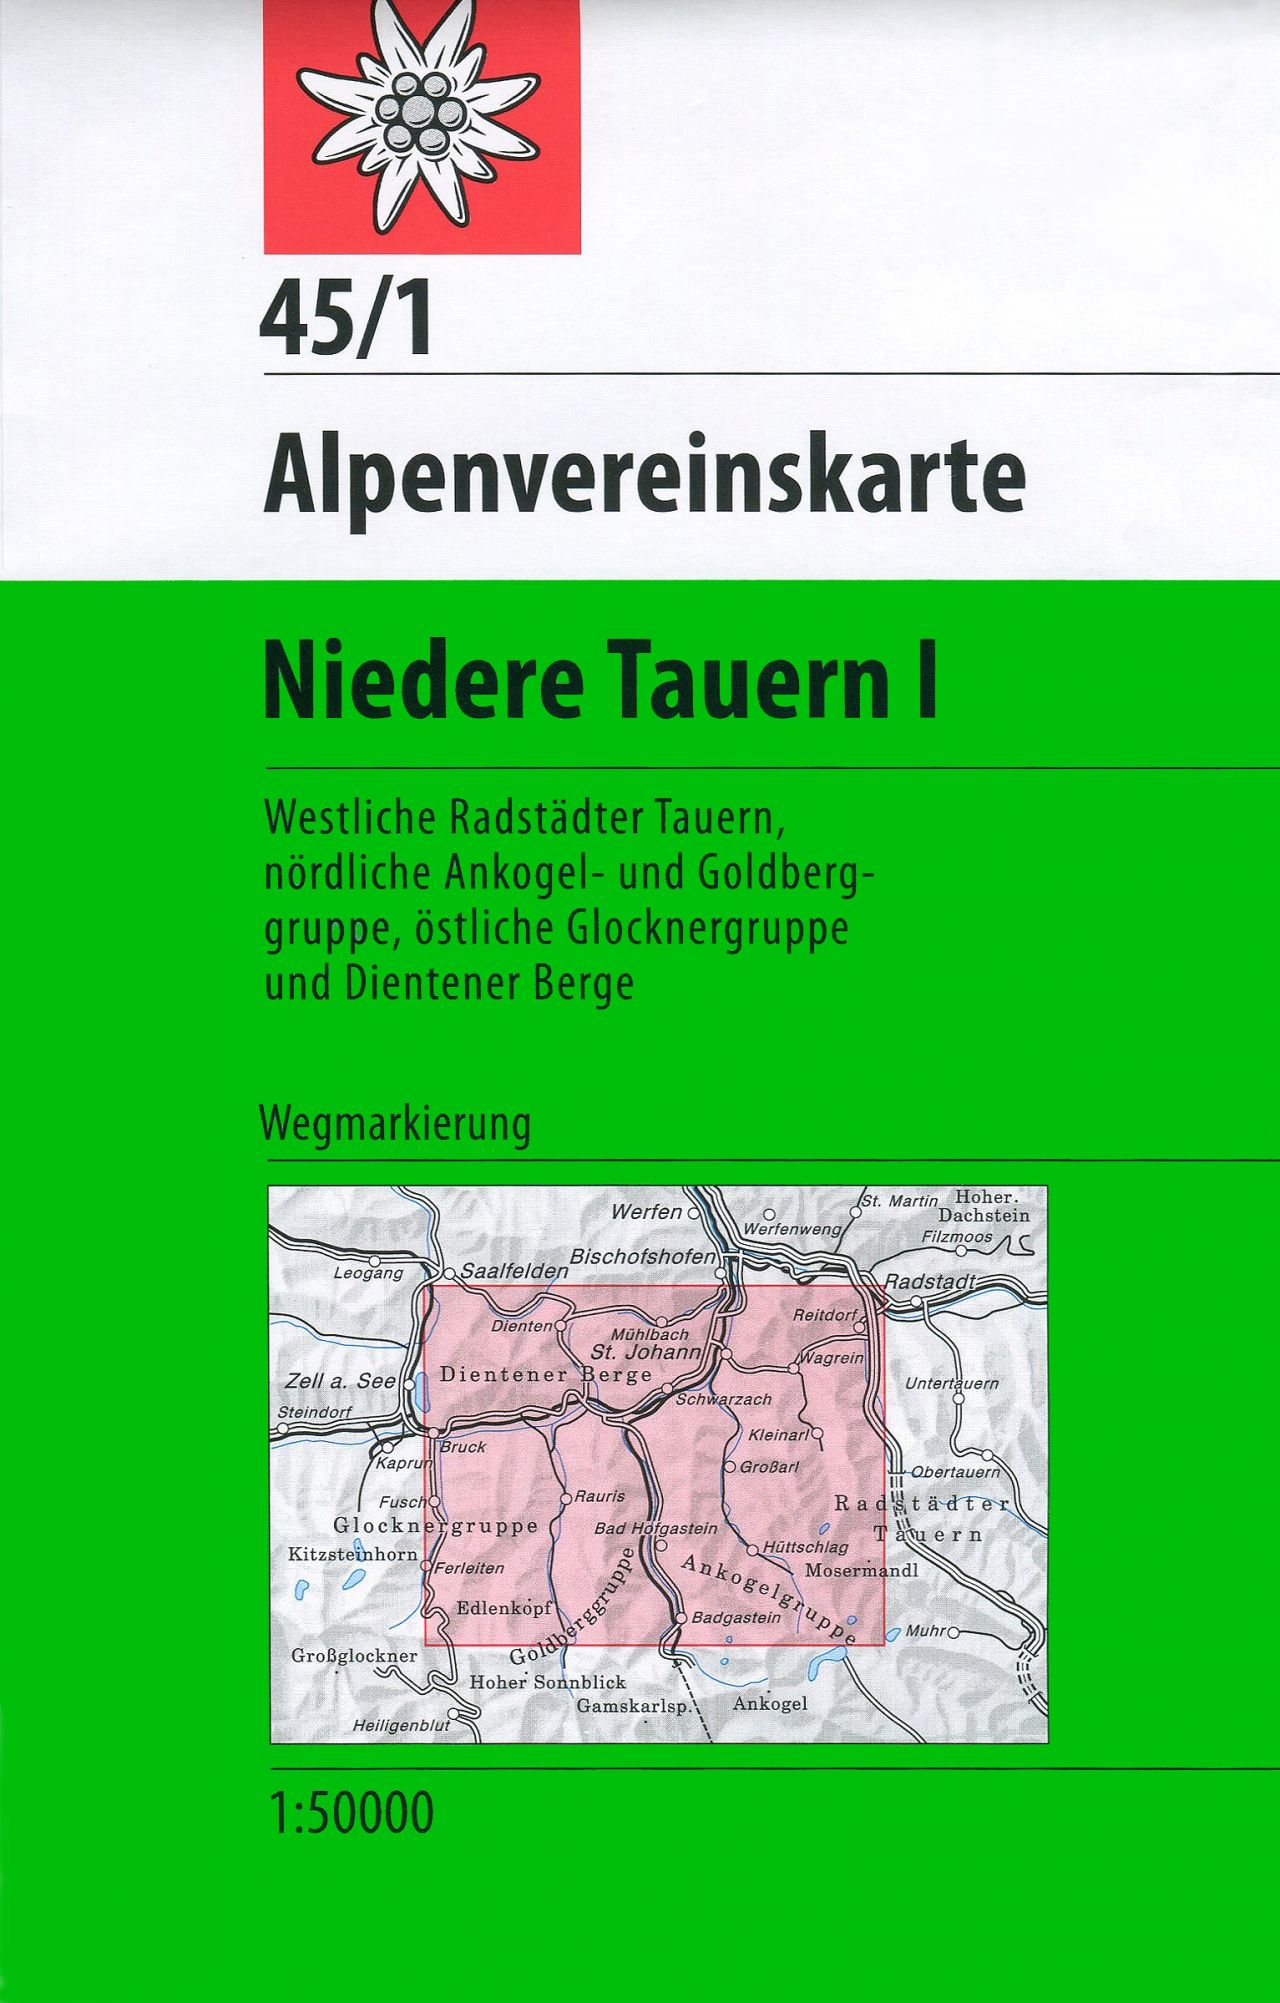 Online bestellen: Wandelkaart 45/1 Alpenvereinskarte Niedere Tauern I | Alpenverein